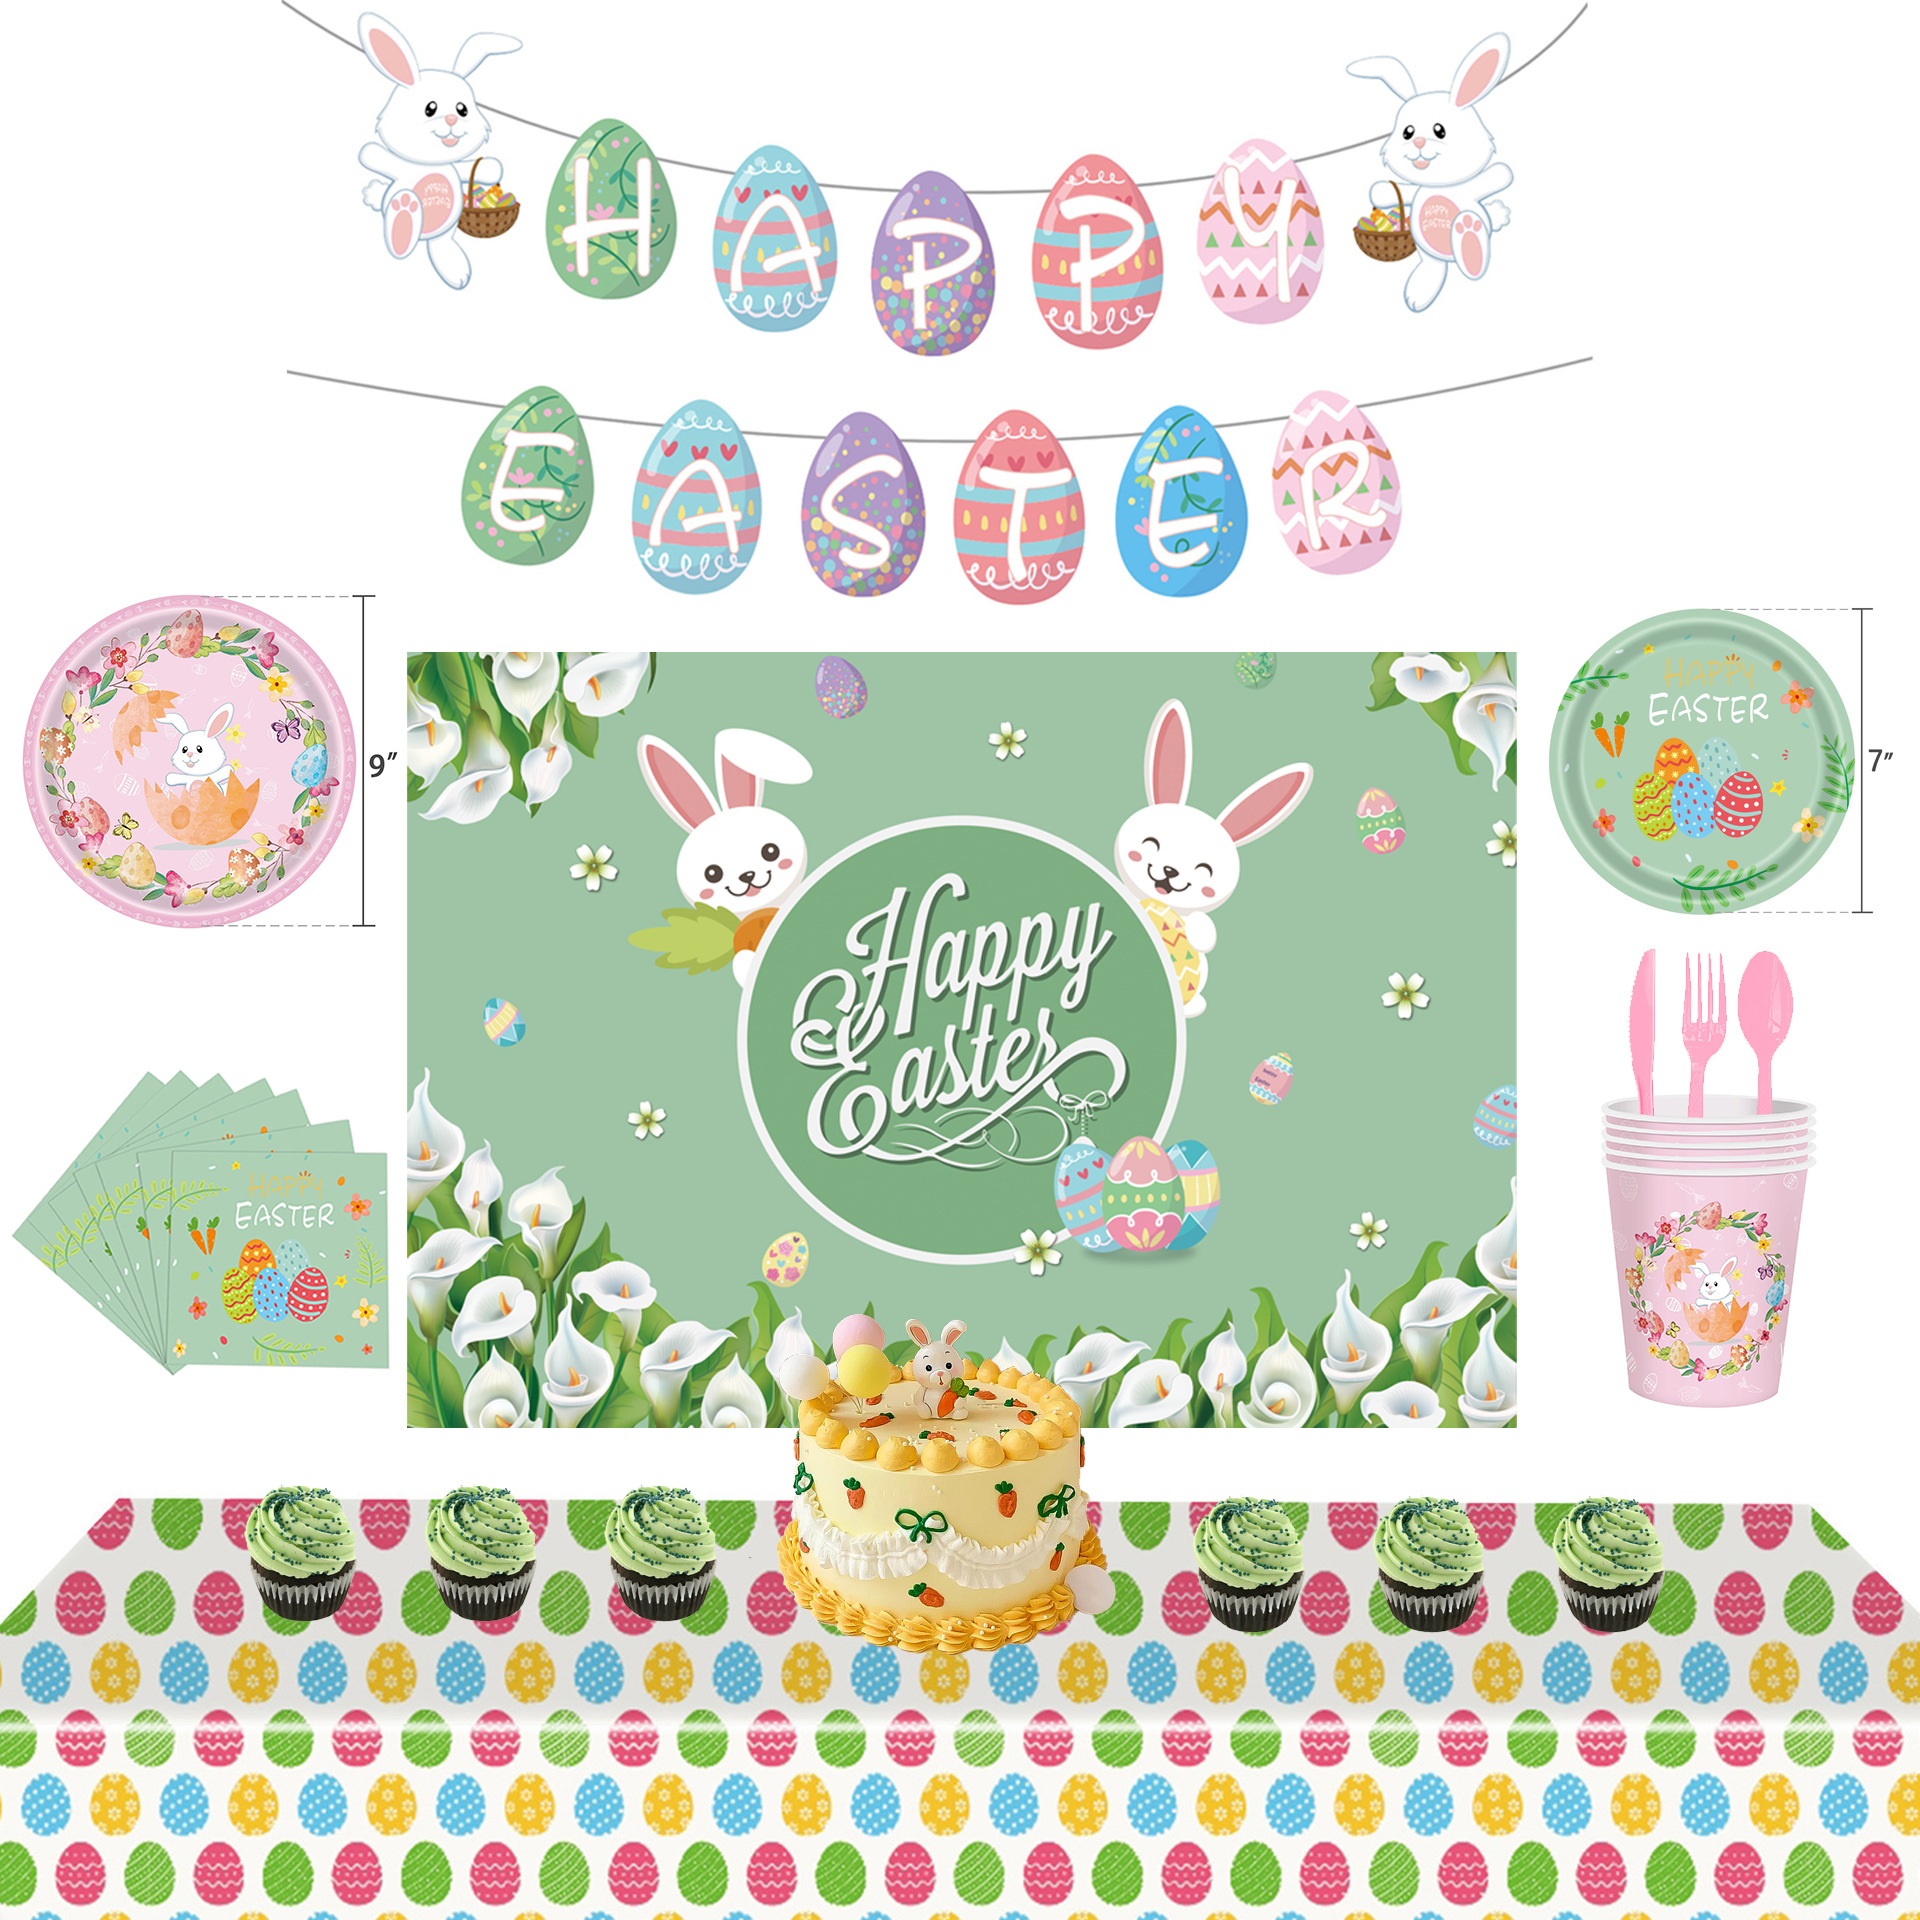 复活节主题派对聚会装饰用品套装背景布 可爱兔子彩蛋礼品袋纸袋